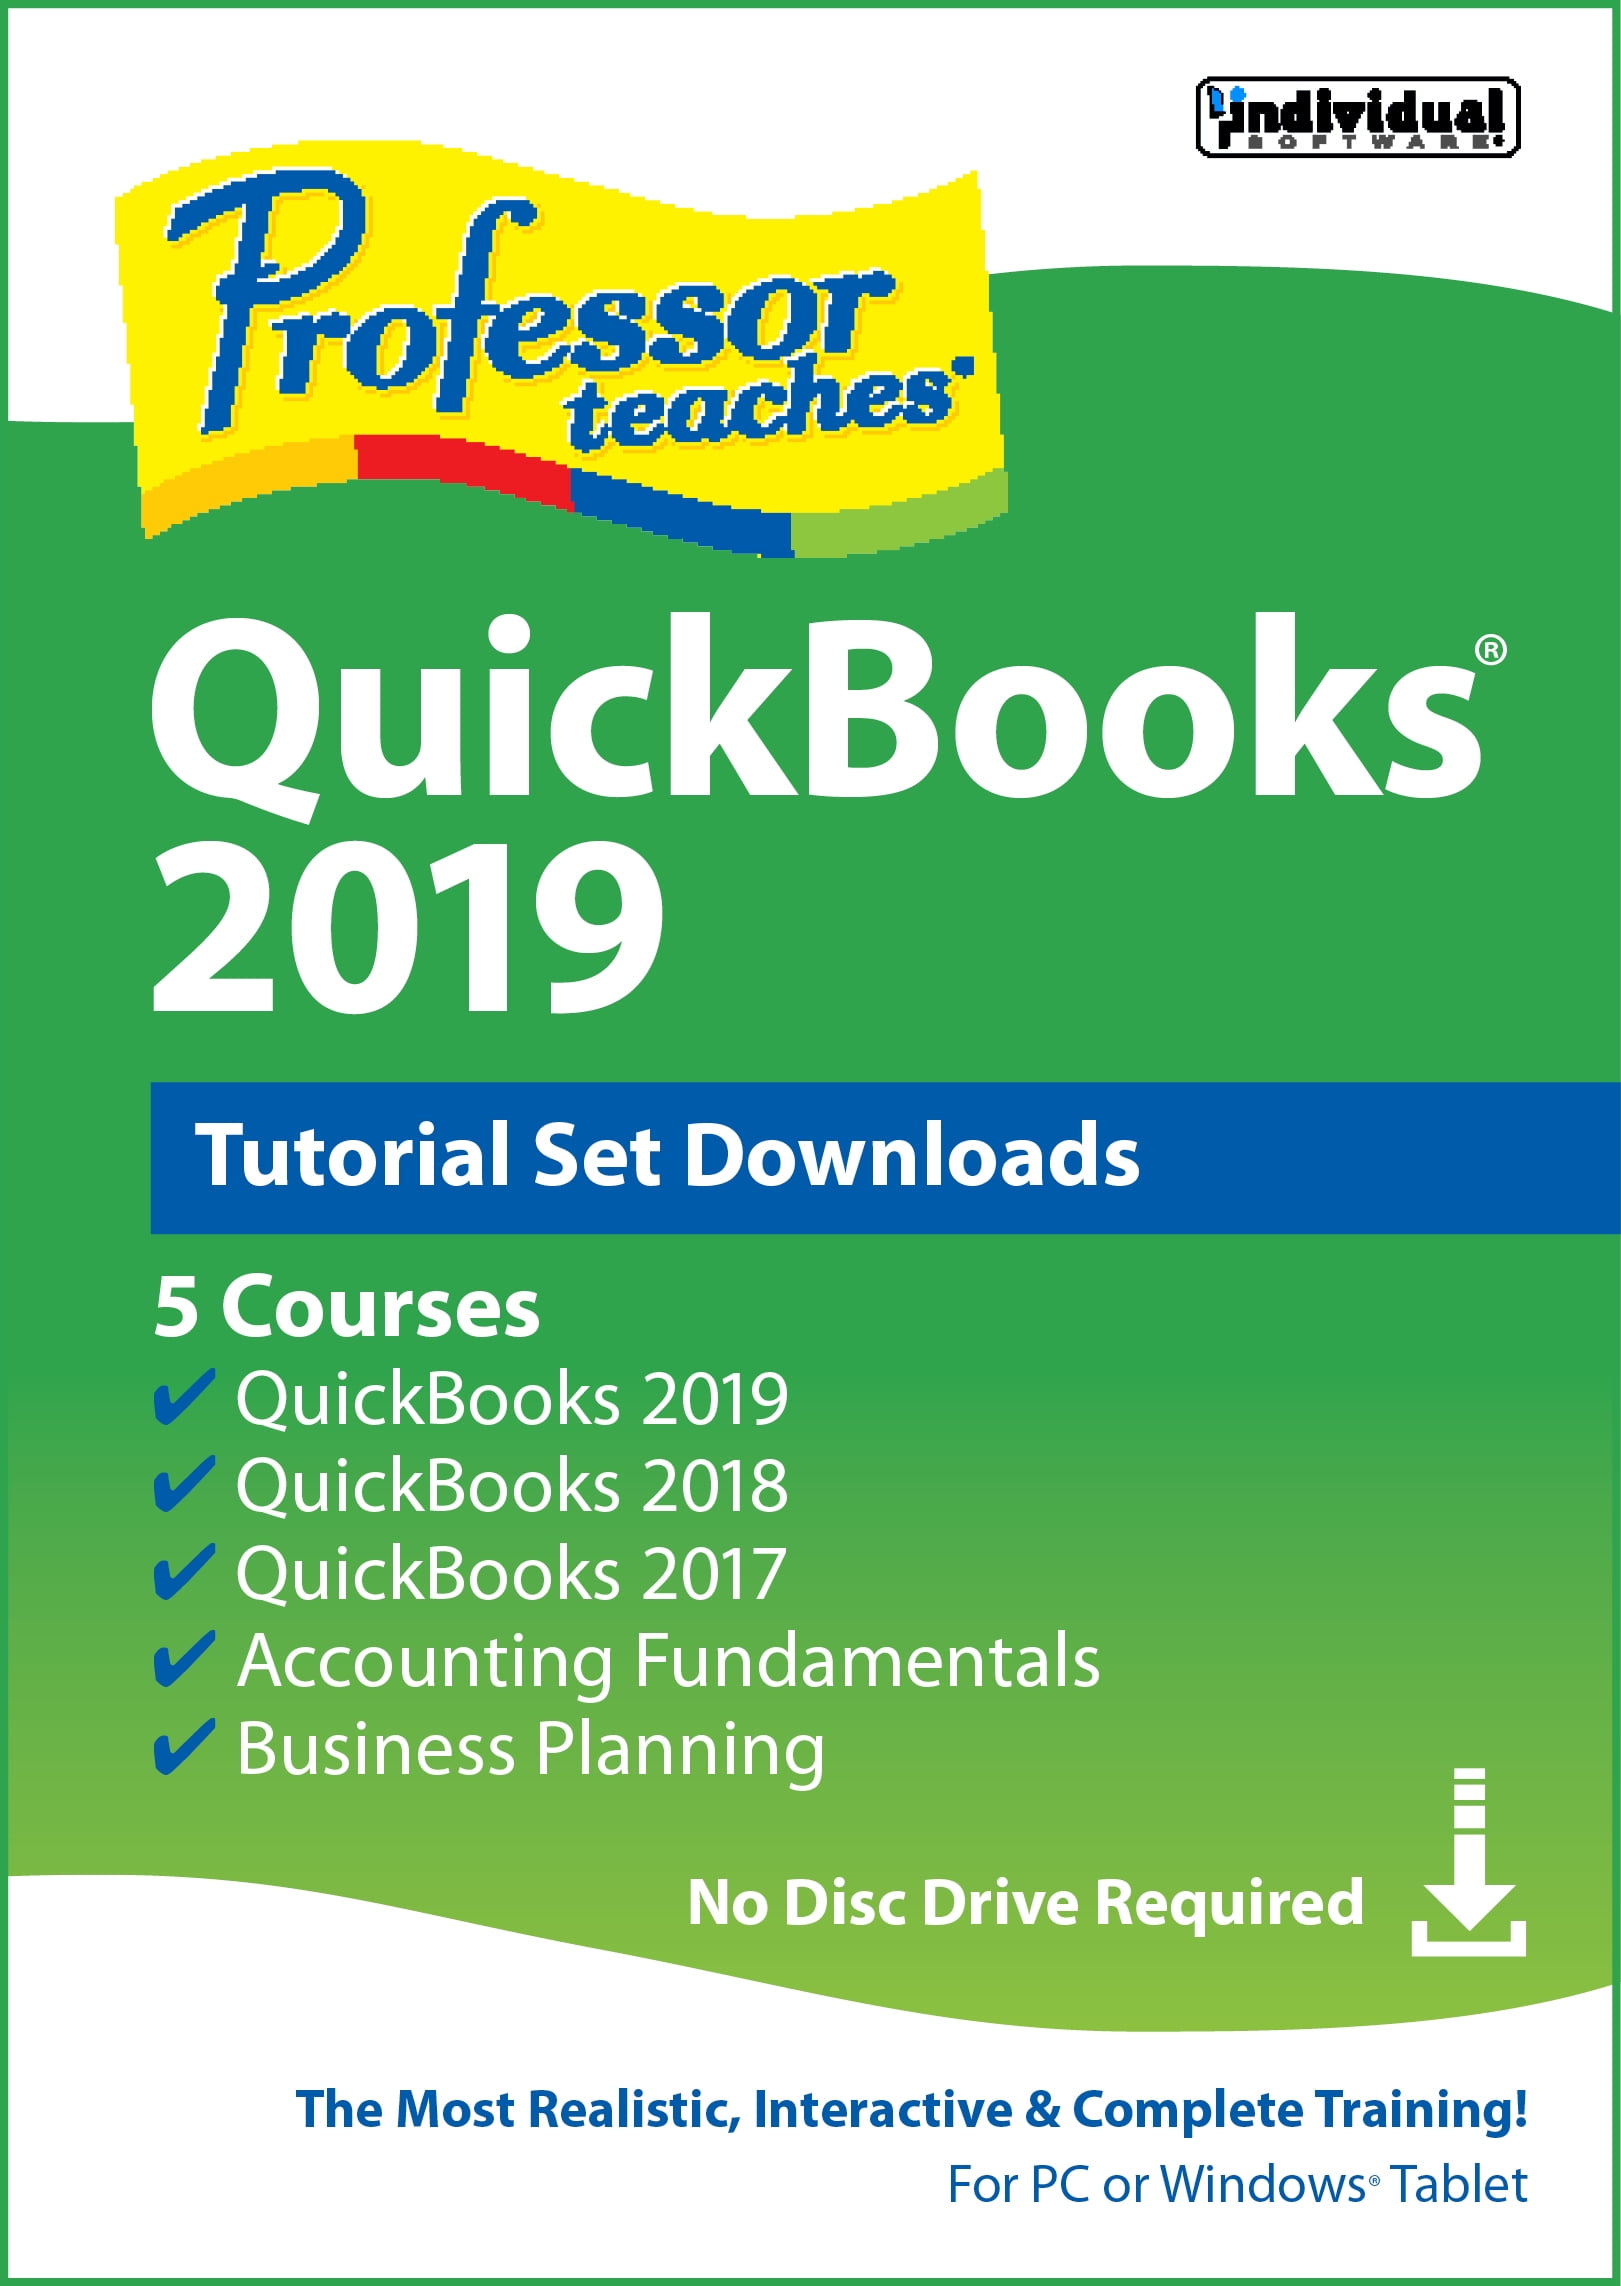 quickbooks enterprise 2019 tutorial